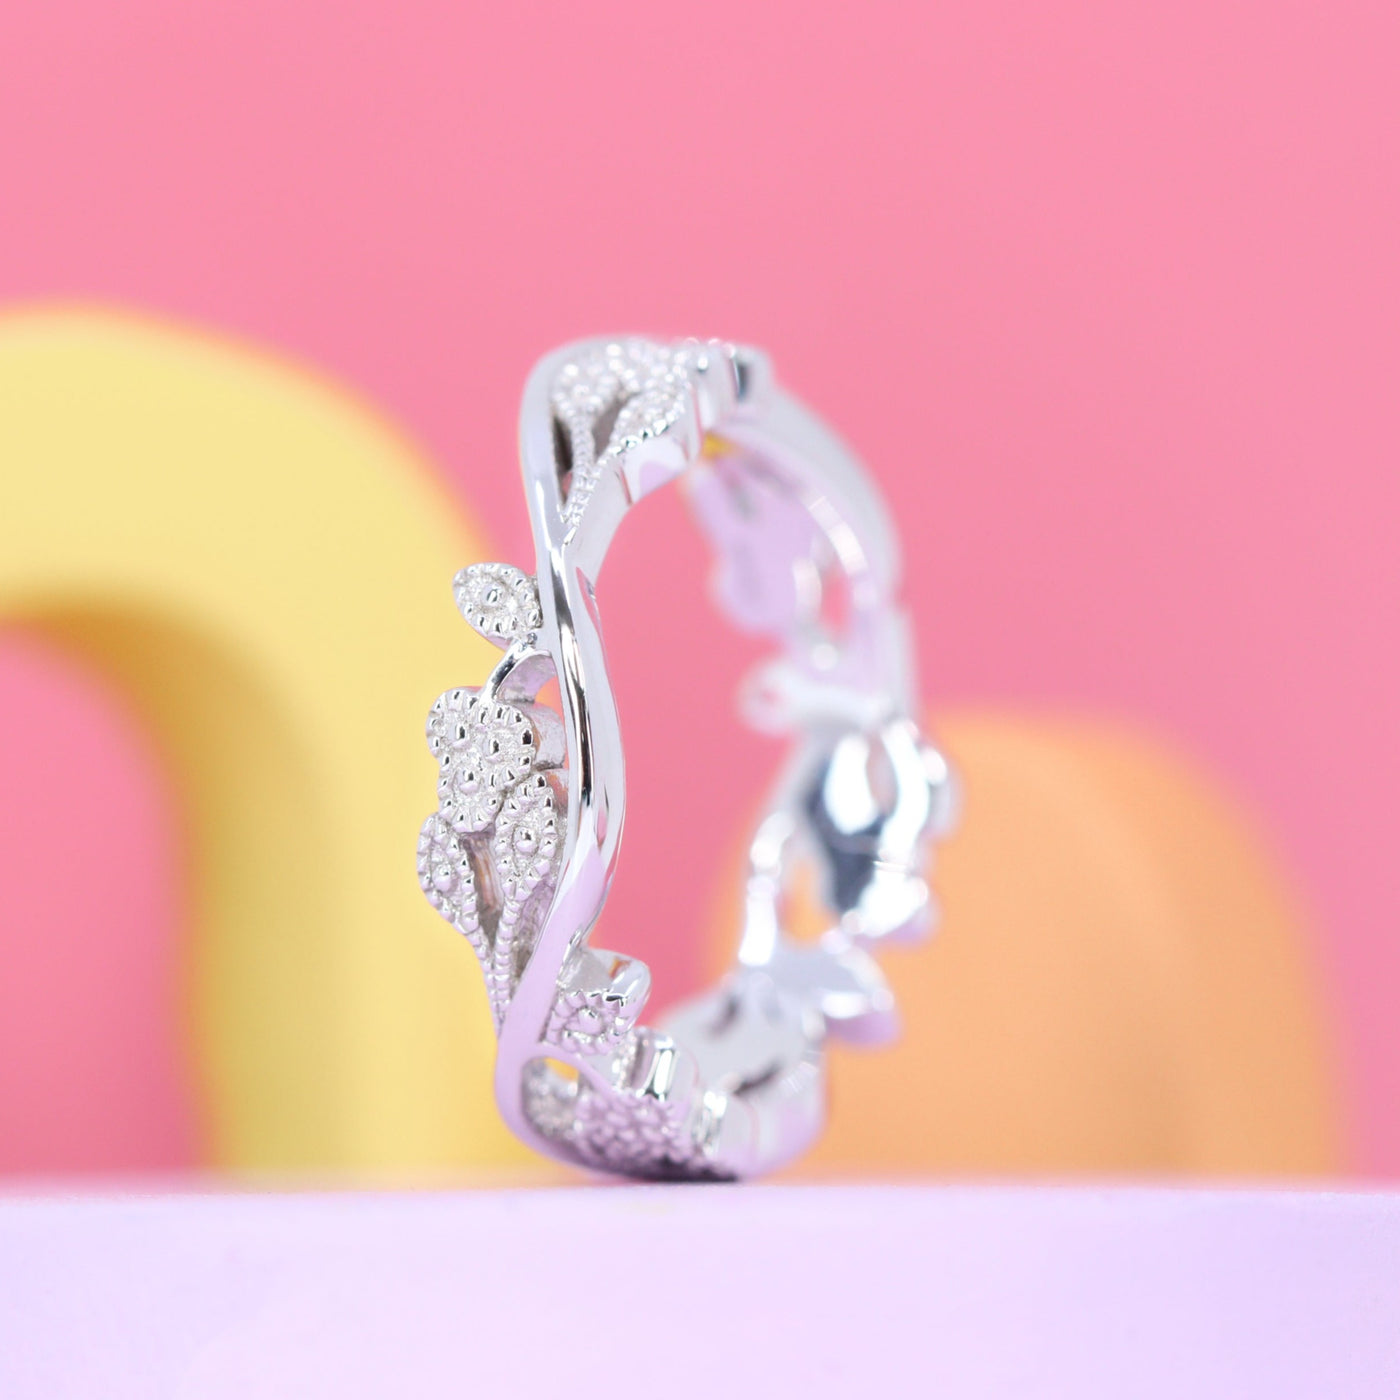 Eveline - Vine Inspired Beaded Diamond Set Ring - Made-to-Order